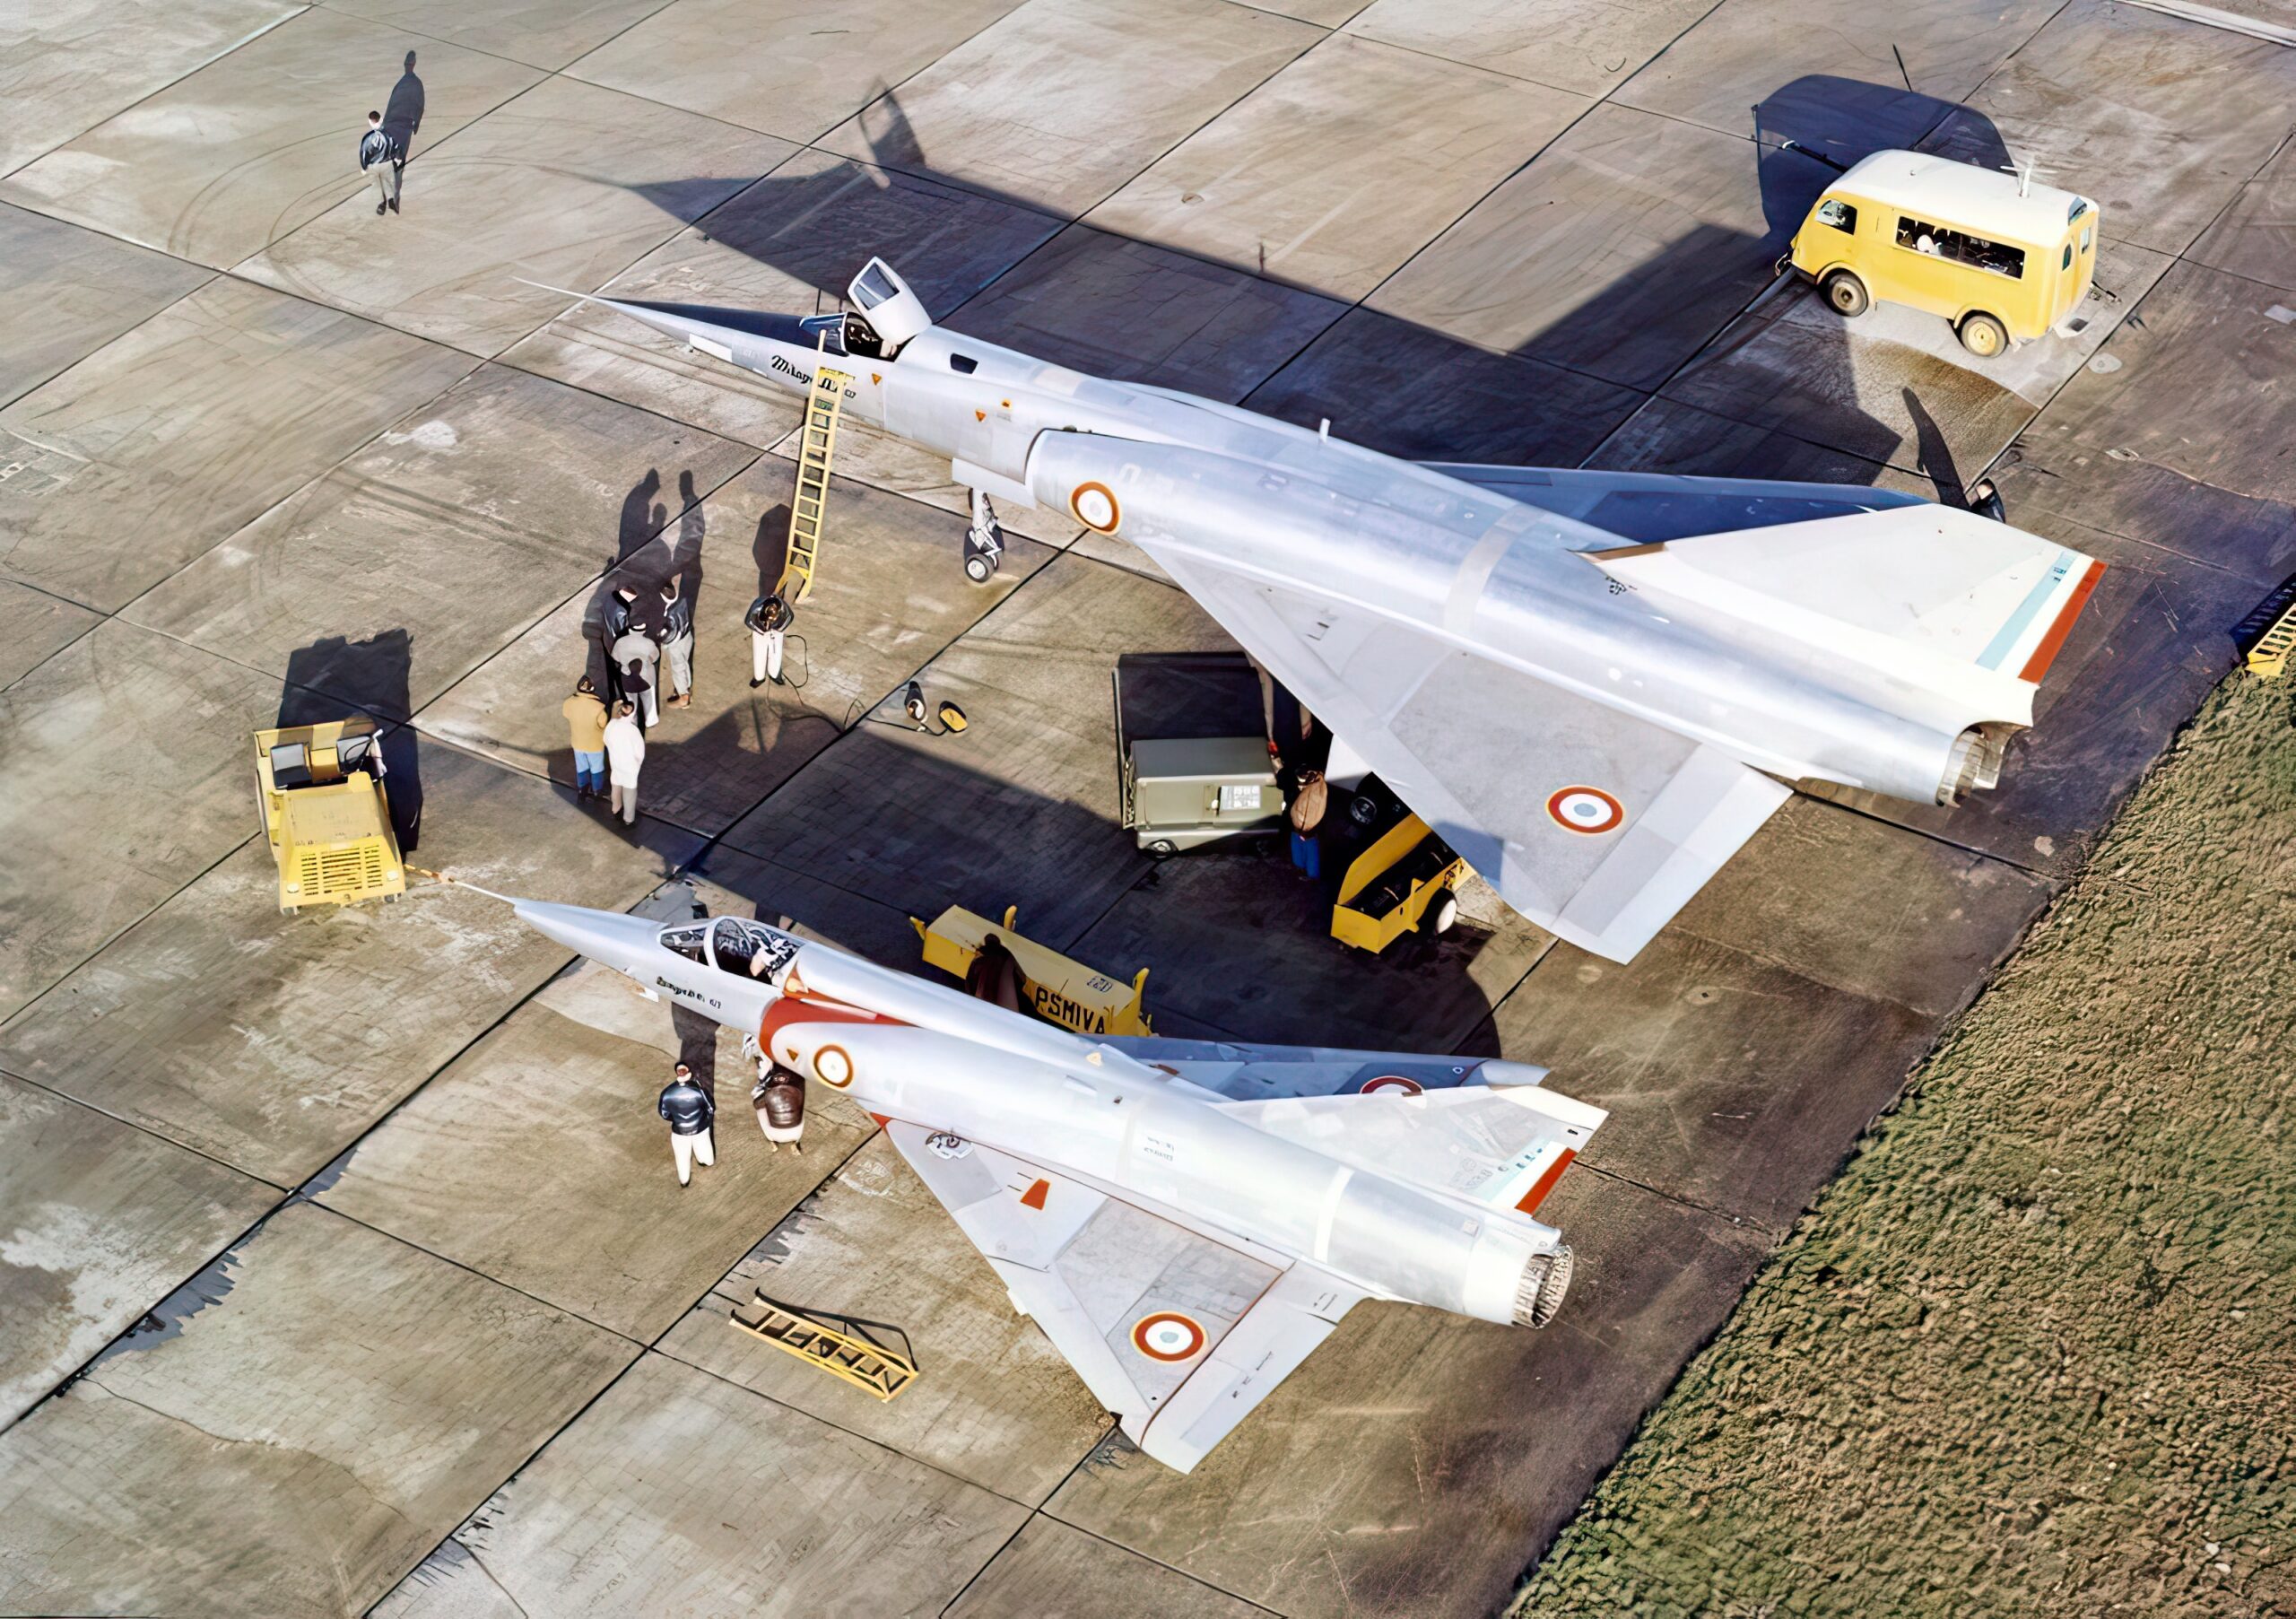 Mirage IV and Mirage III